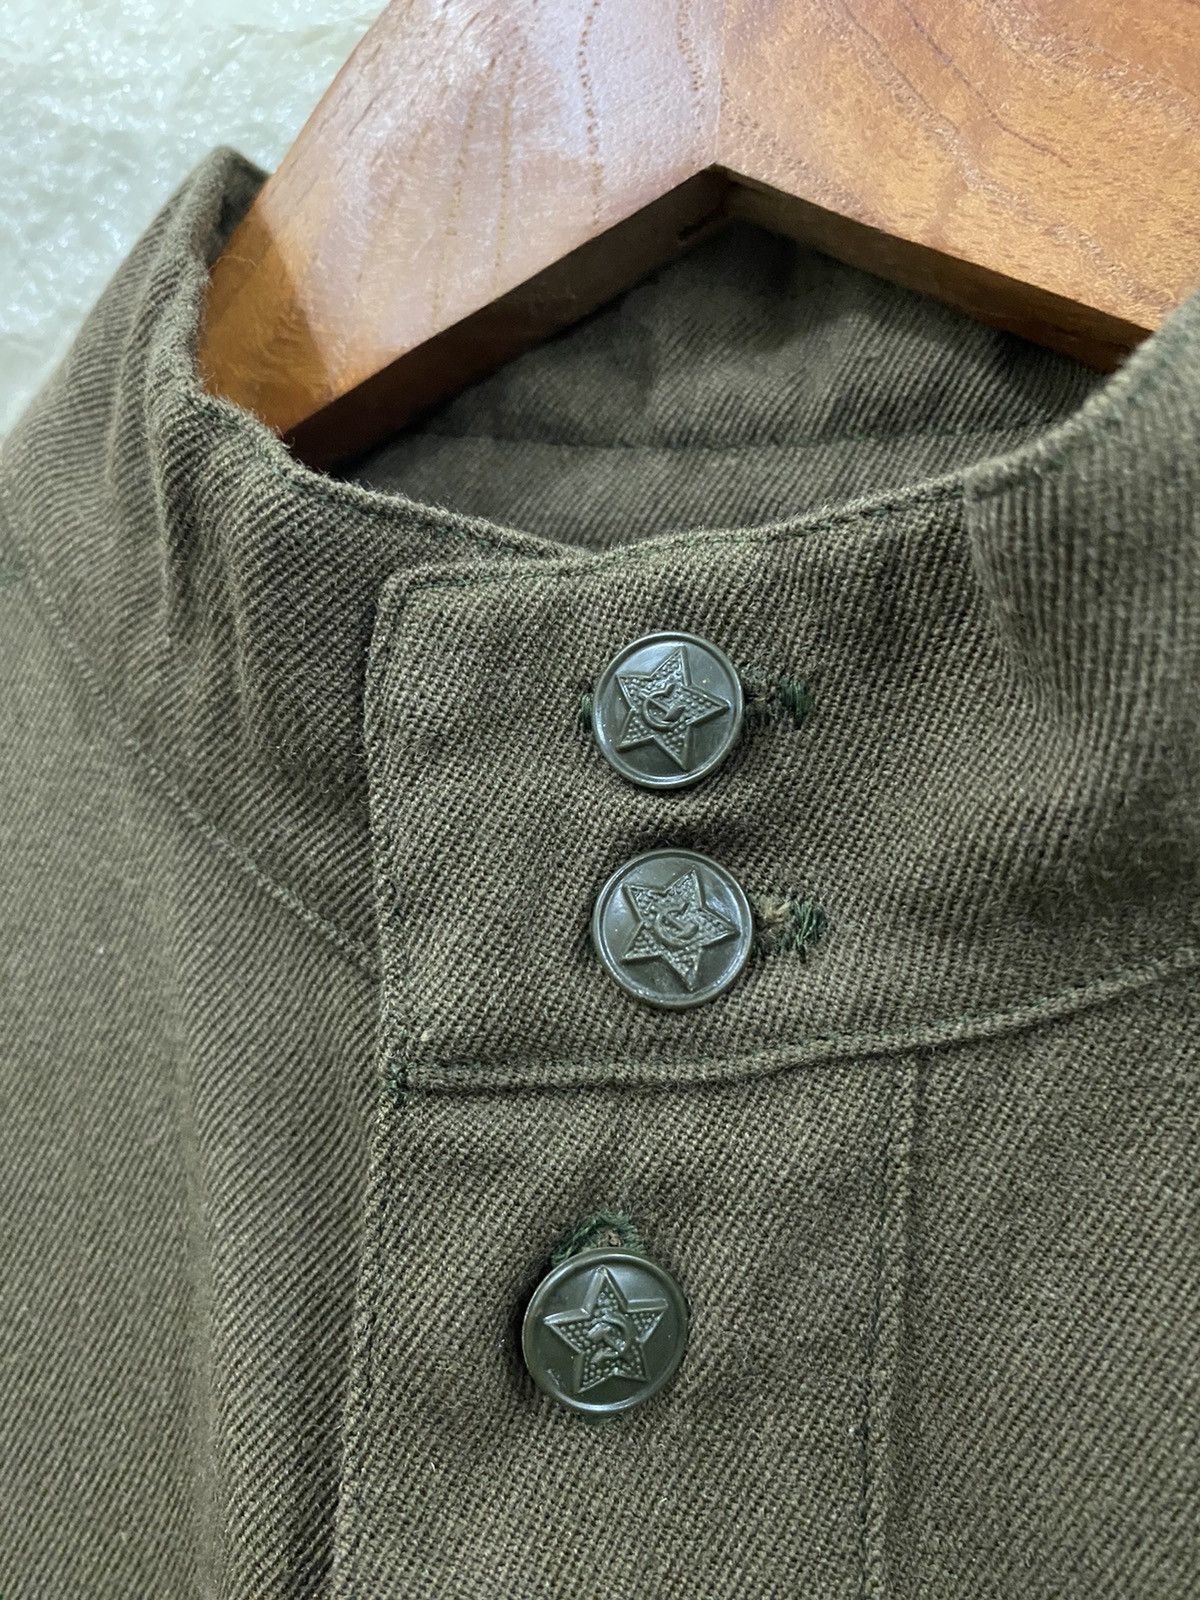 Vintage Vintage 70’s Military Blouse Size L / US 10 / IT 46 - 4 Thumbnail